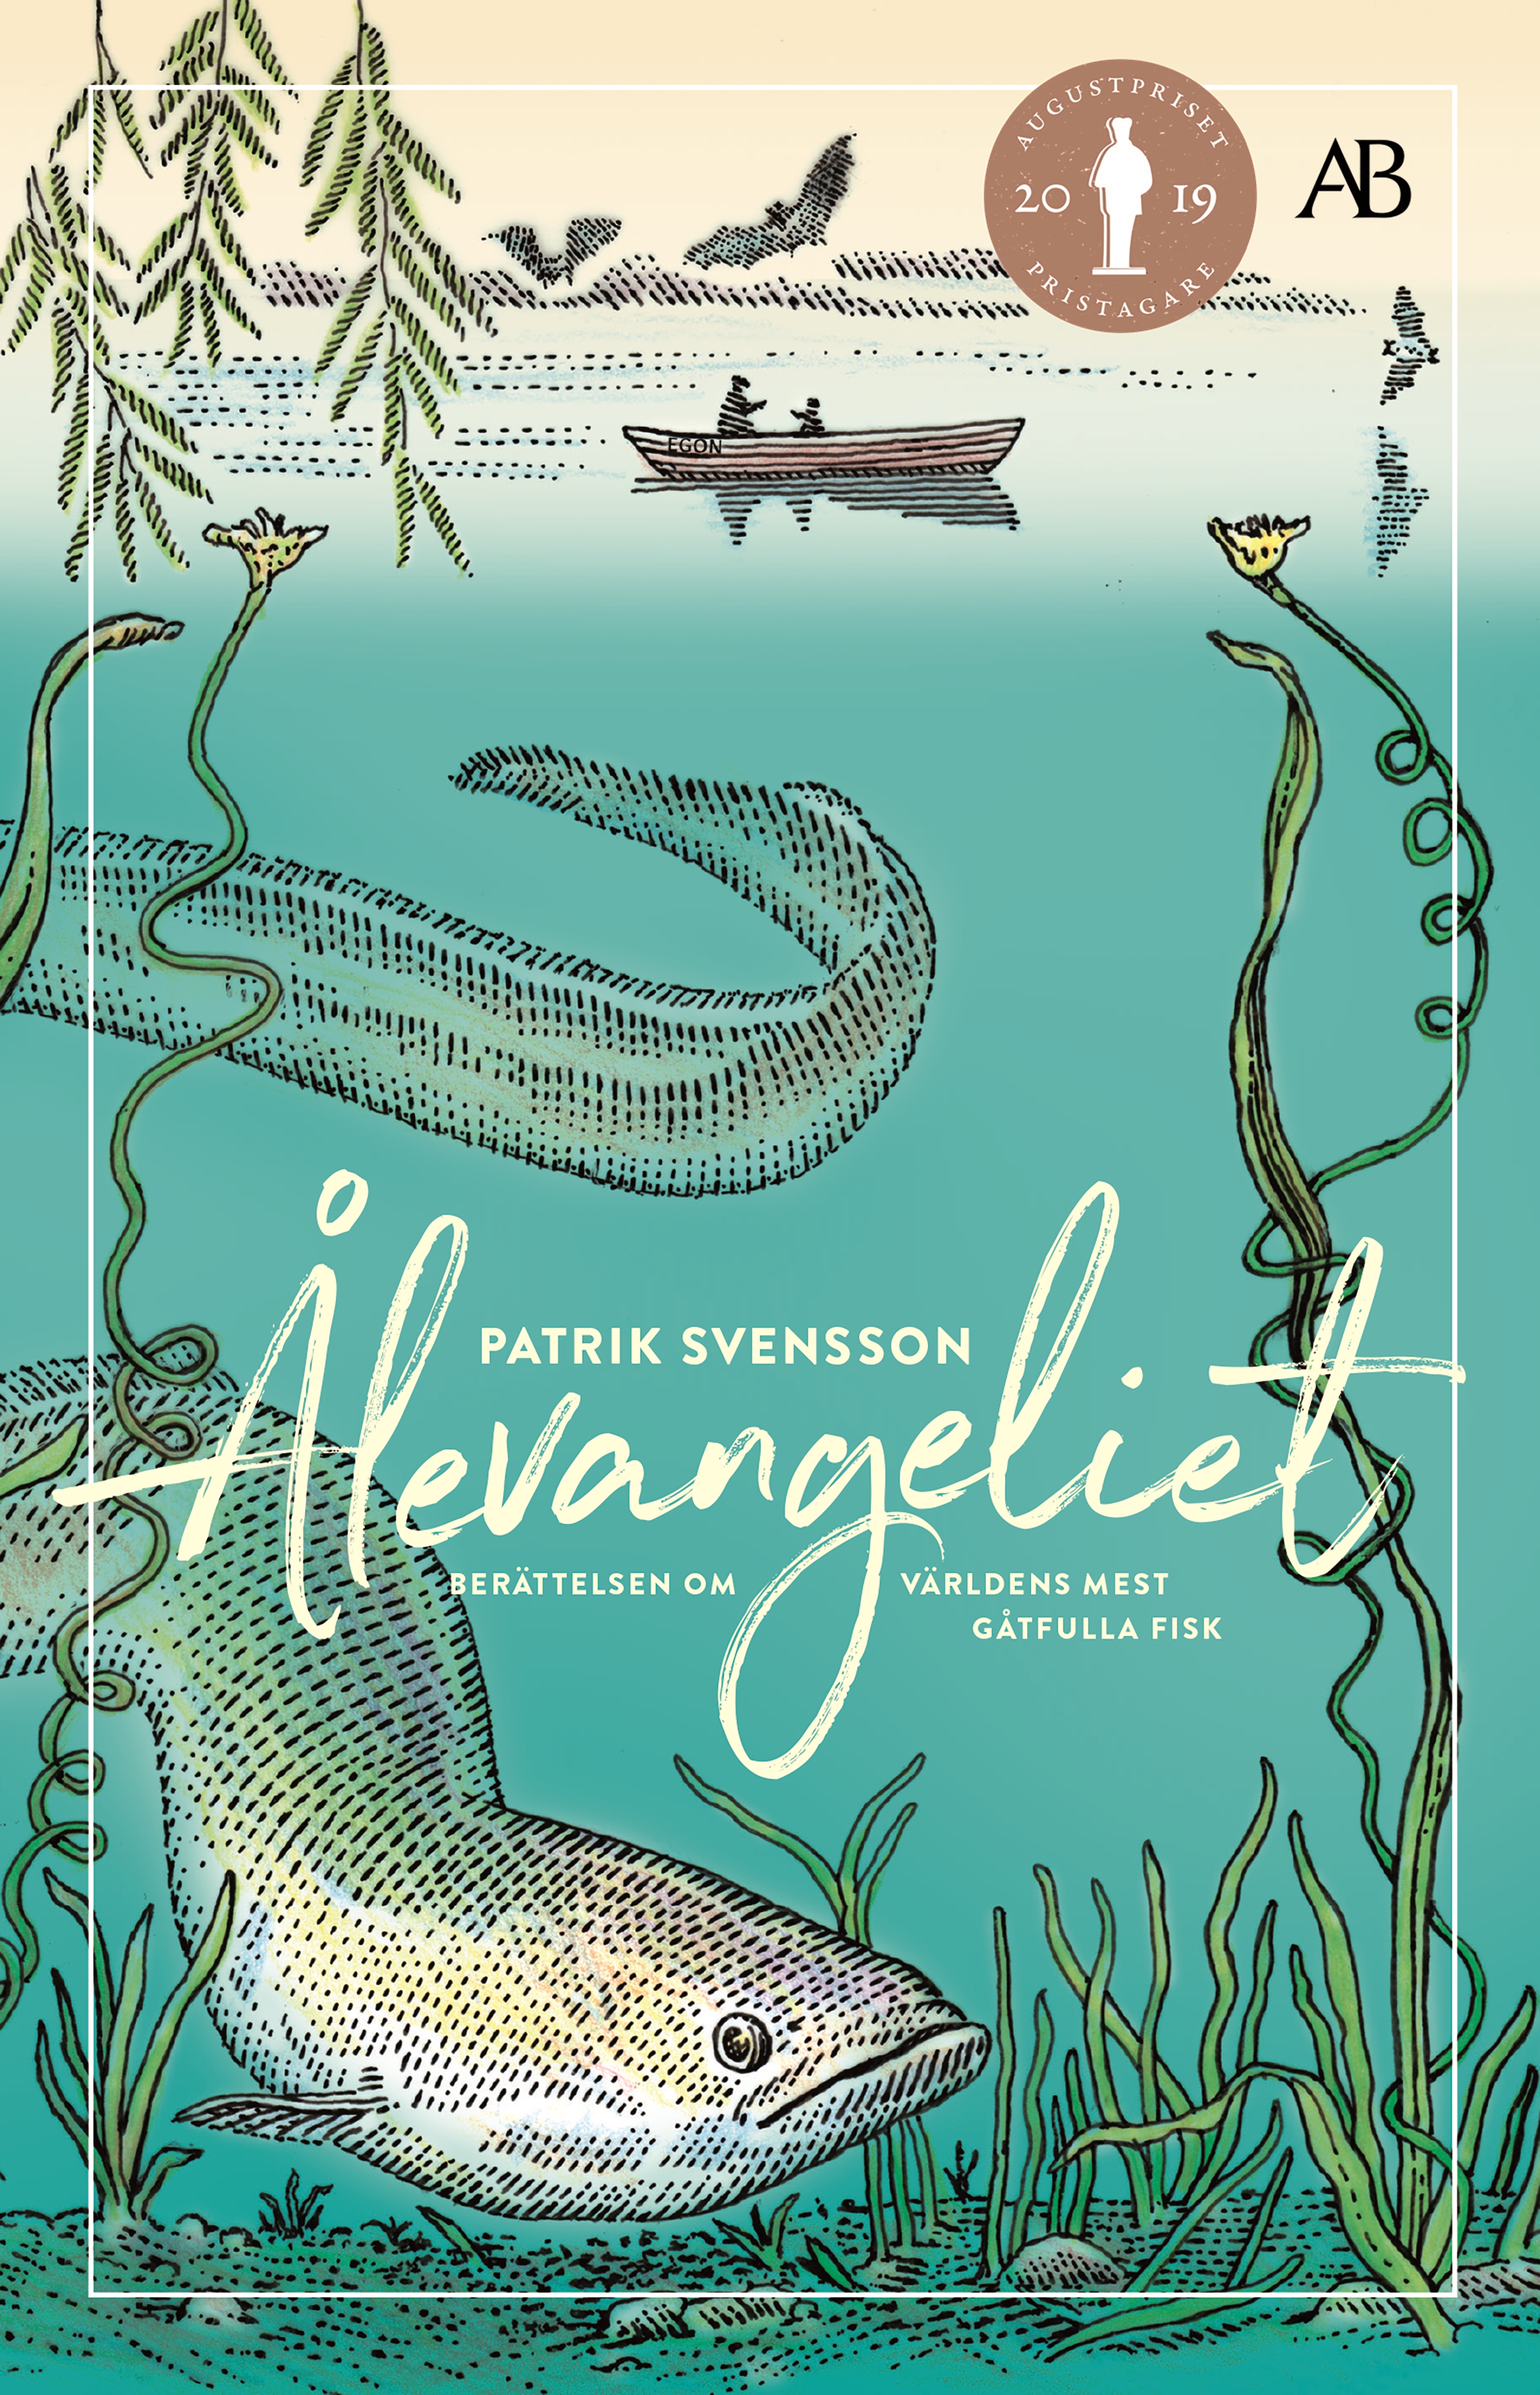 Ålevangeliet : berättelsen om världens mest gåtfulla fisk by Patrik Svensson